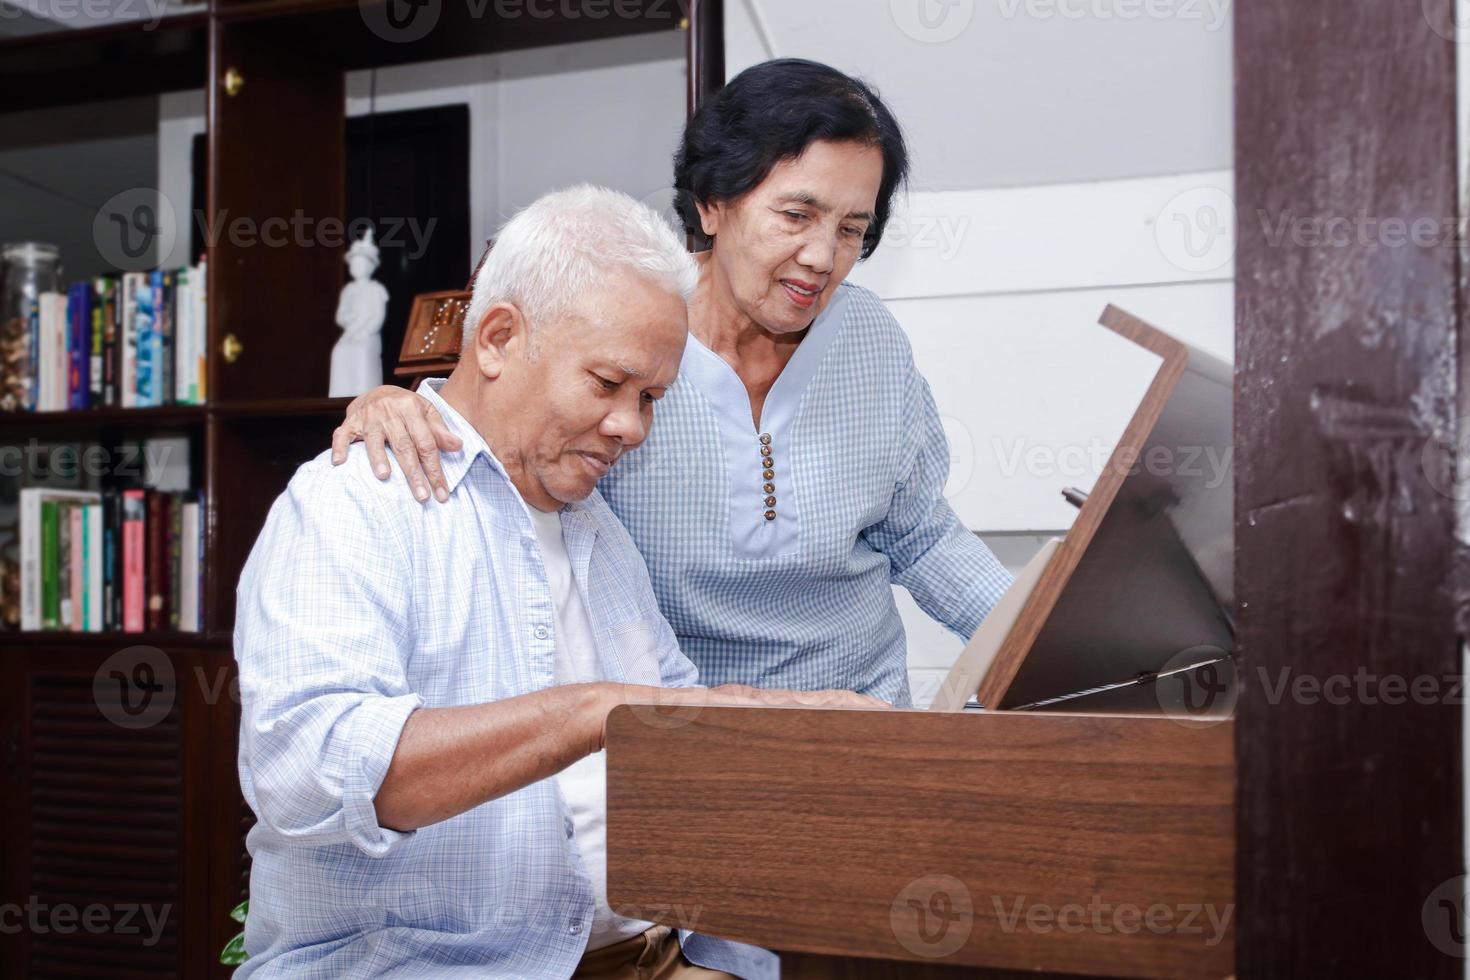 un couple de personnes âgées asiatiques s'amuse à jouer du piano électrique ensemble. concept de communauté senior, soins de santé photo